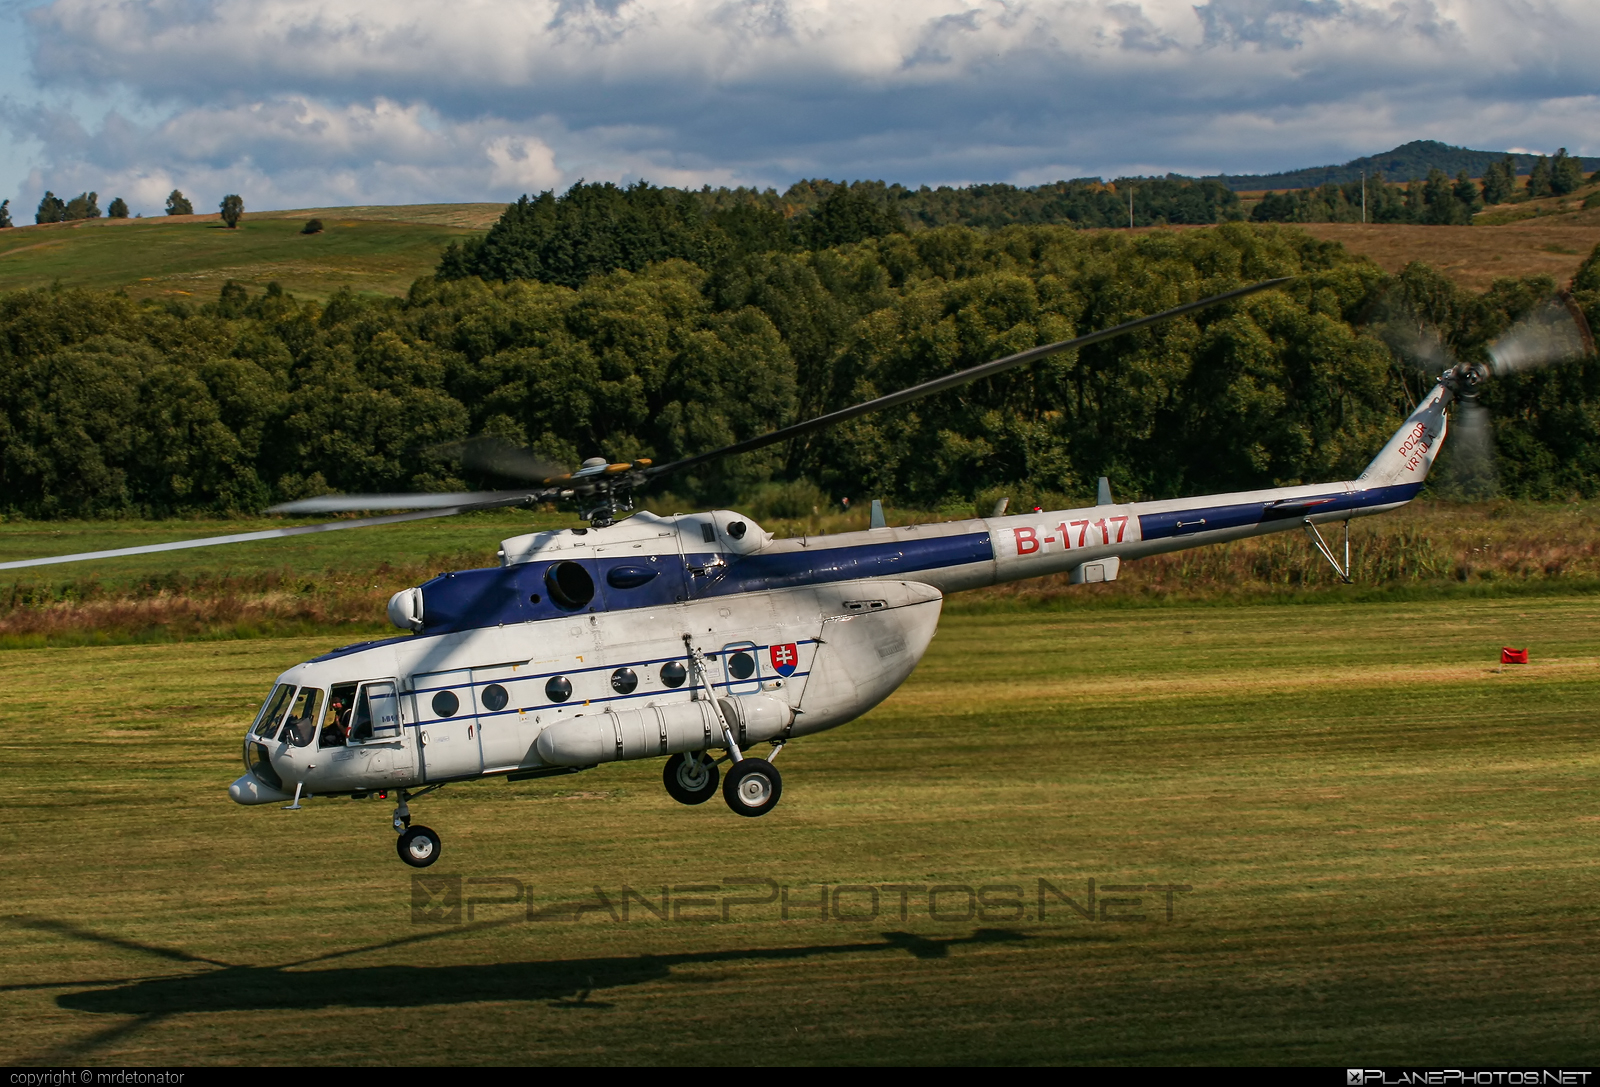 Mil Mi-171 - B-1717 operated by Letecký útvar MV SR (Slovak Government Flying Service) #SlovakGovernmentFlyingService #leteckyutvarMVSR #mi171 #mil #mil171 #milhelicopters